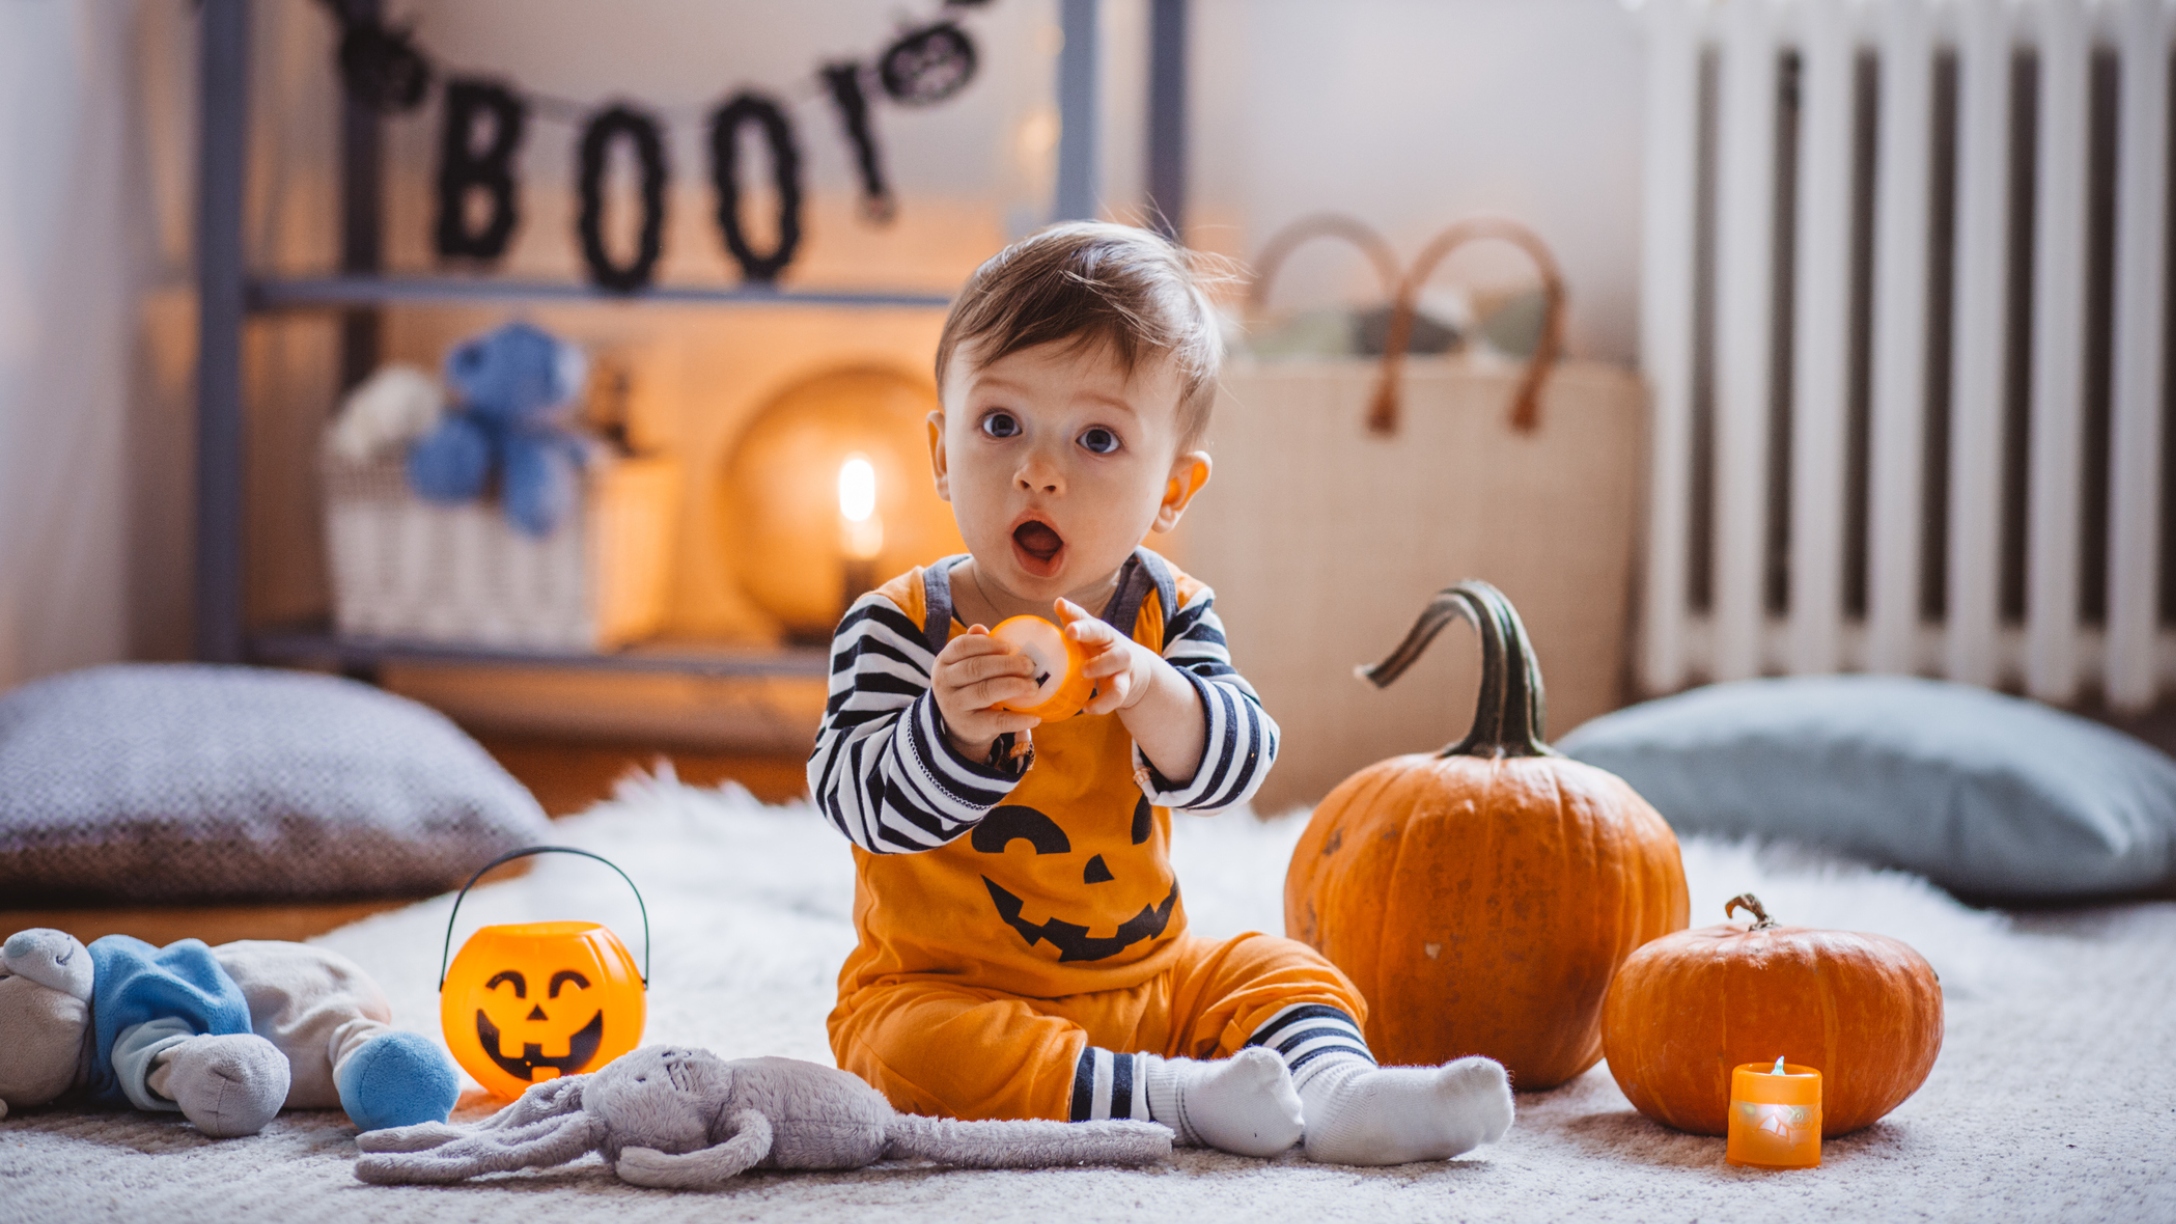 Recite Catena Follow us 15 Tutoriales de disfraces de Halloween para niños, que son económicos y  fáciles de hacer | MamasLatinas.com